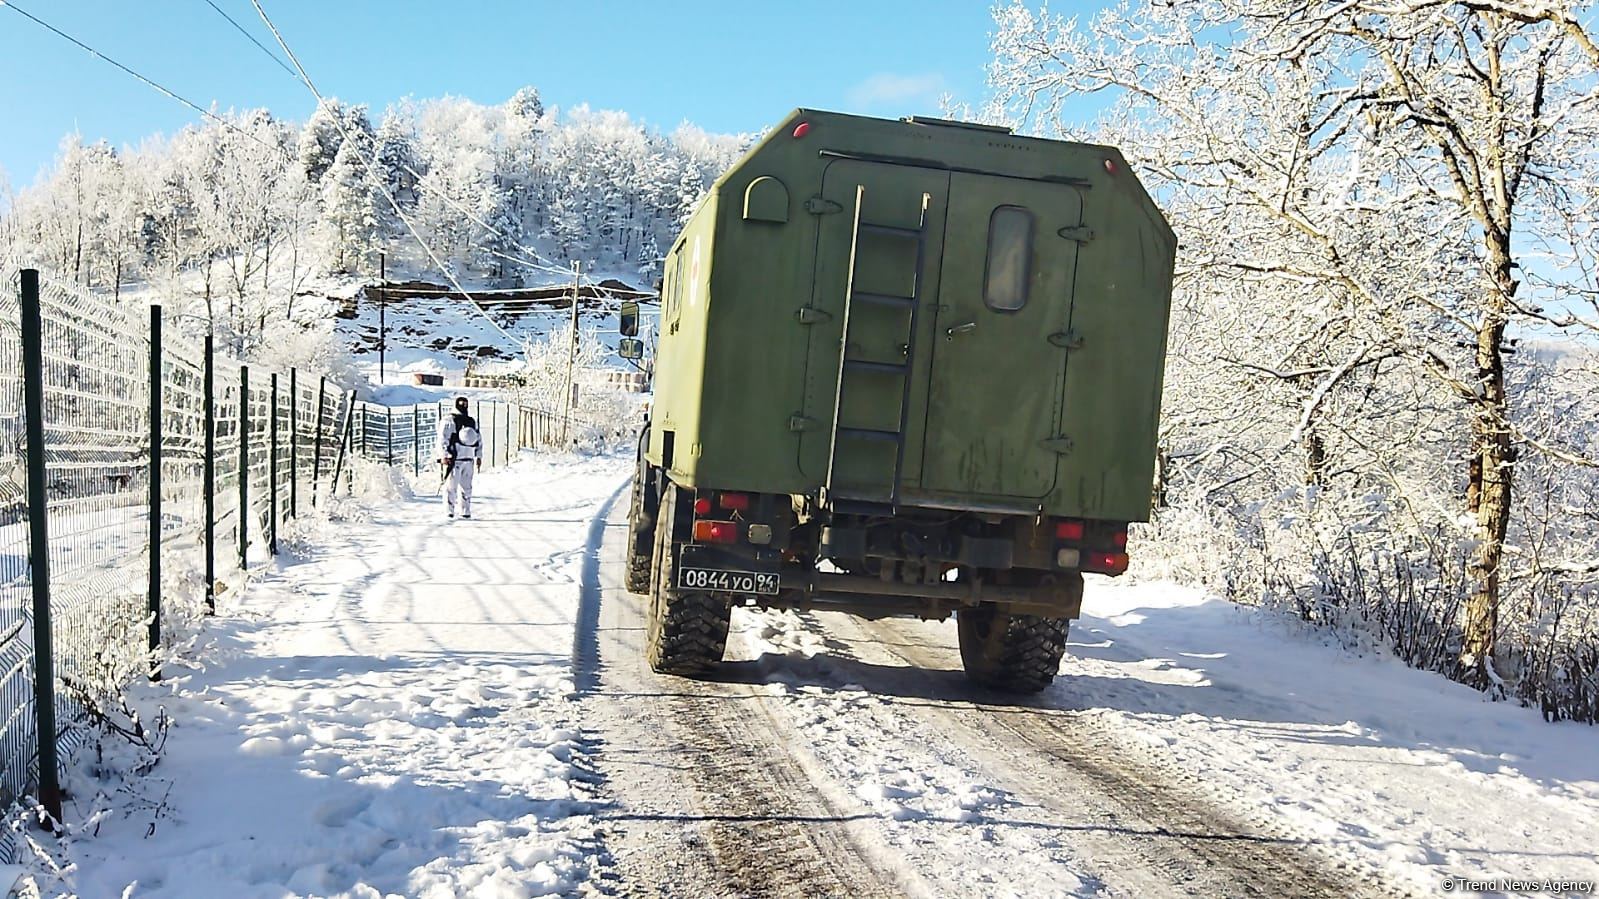 Ambulance, vehicle of Russian peacekeepers pass along Azerbaijan's Lachin-Khankendi road (PHOTO)